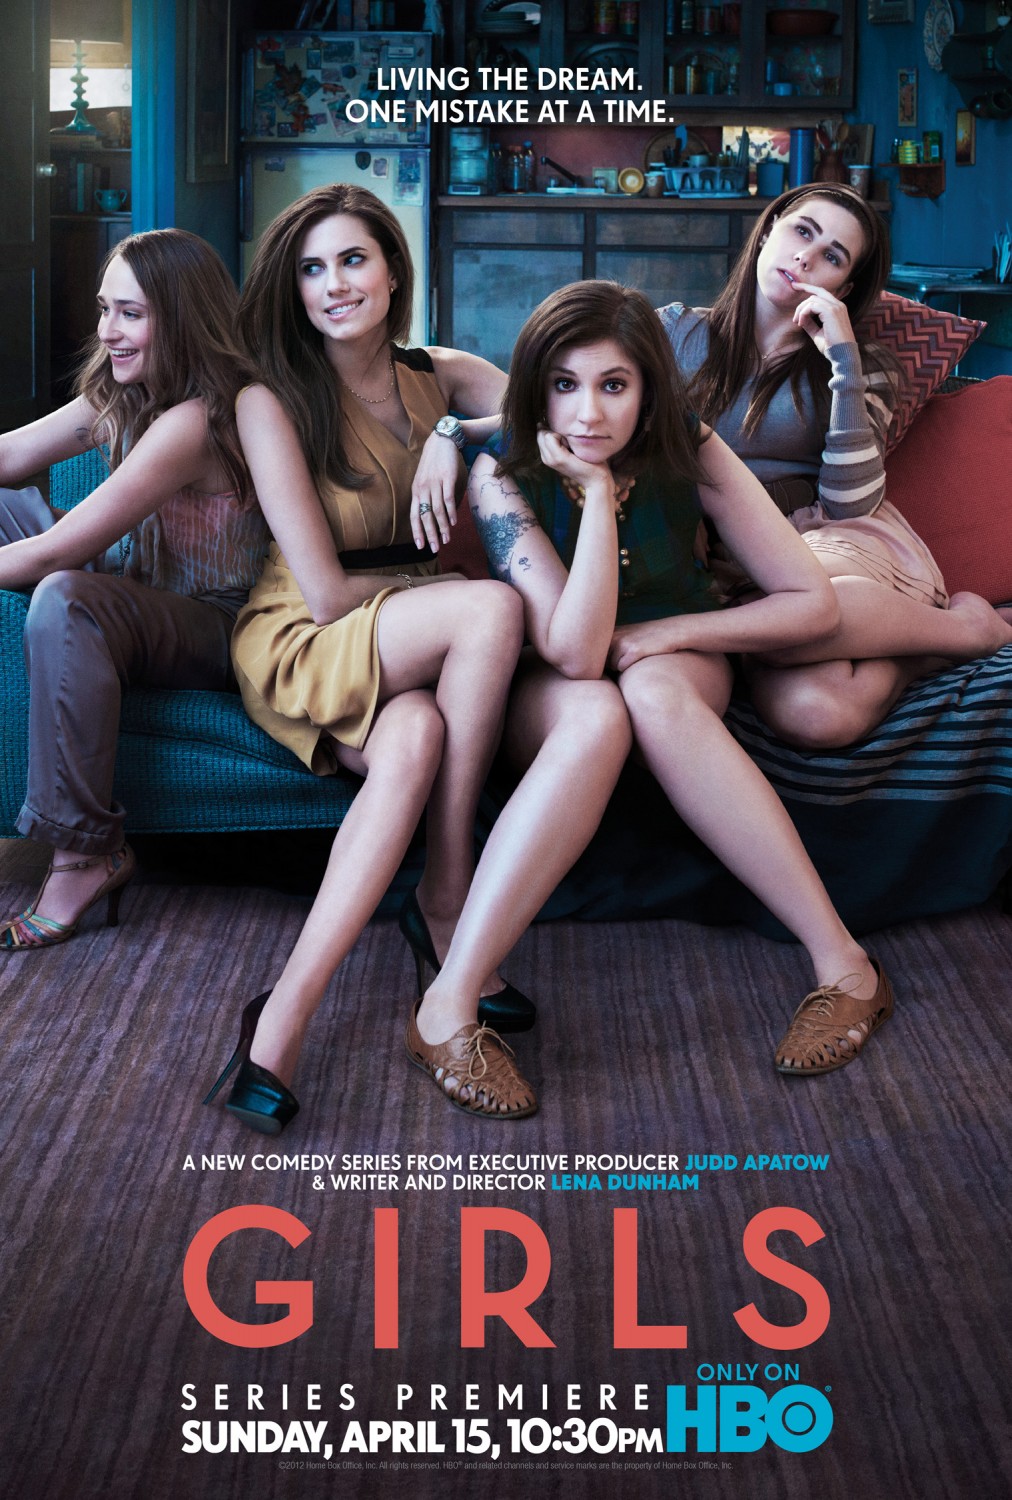 Girls on Film : Mega Sized Movie Poster Image - IMP Awards